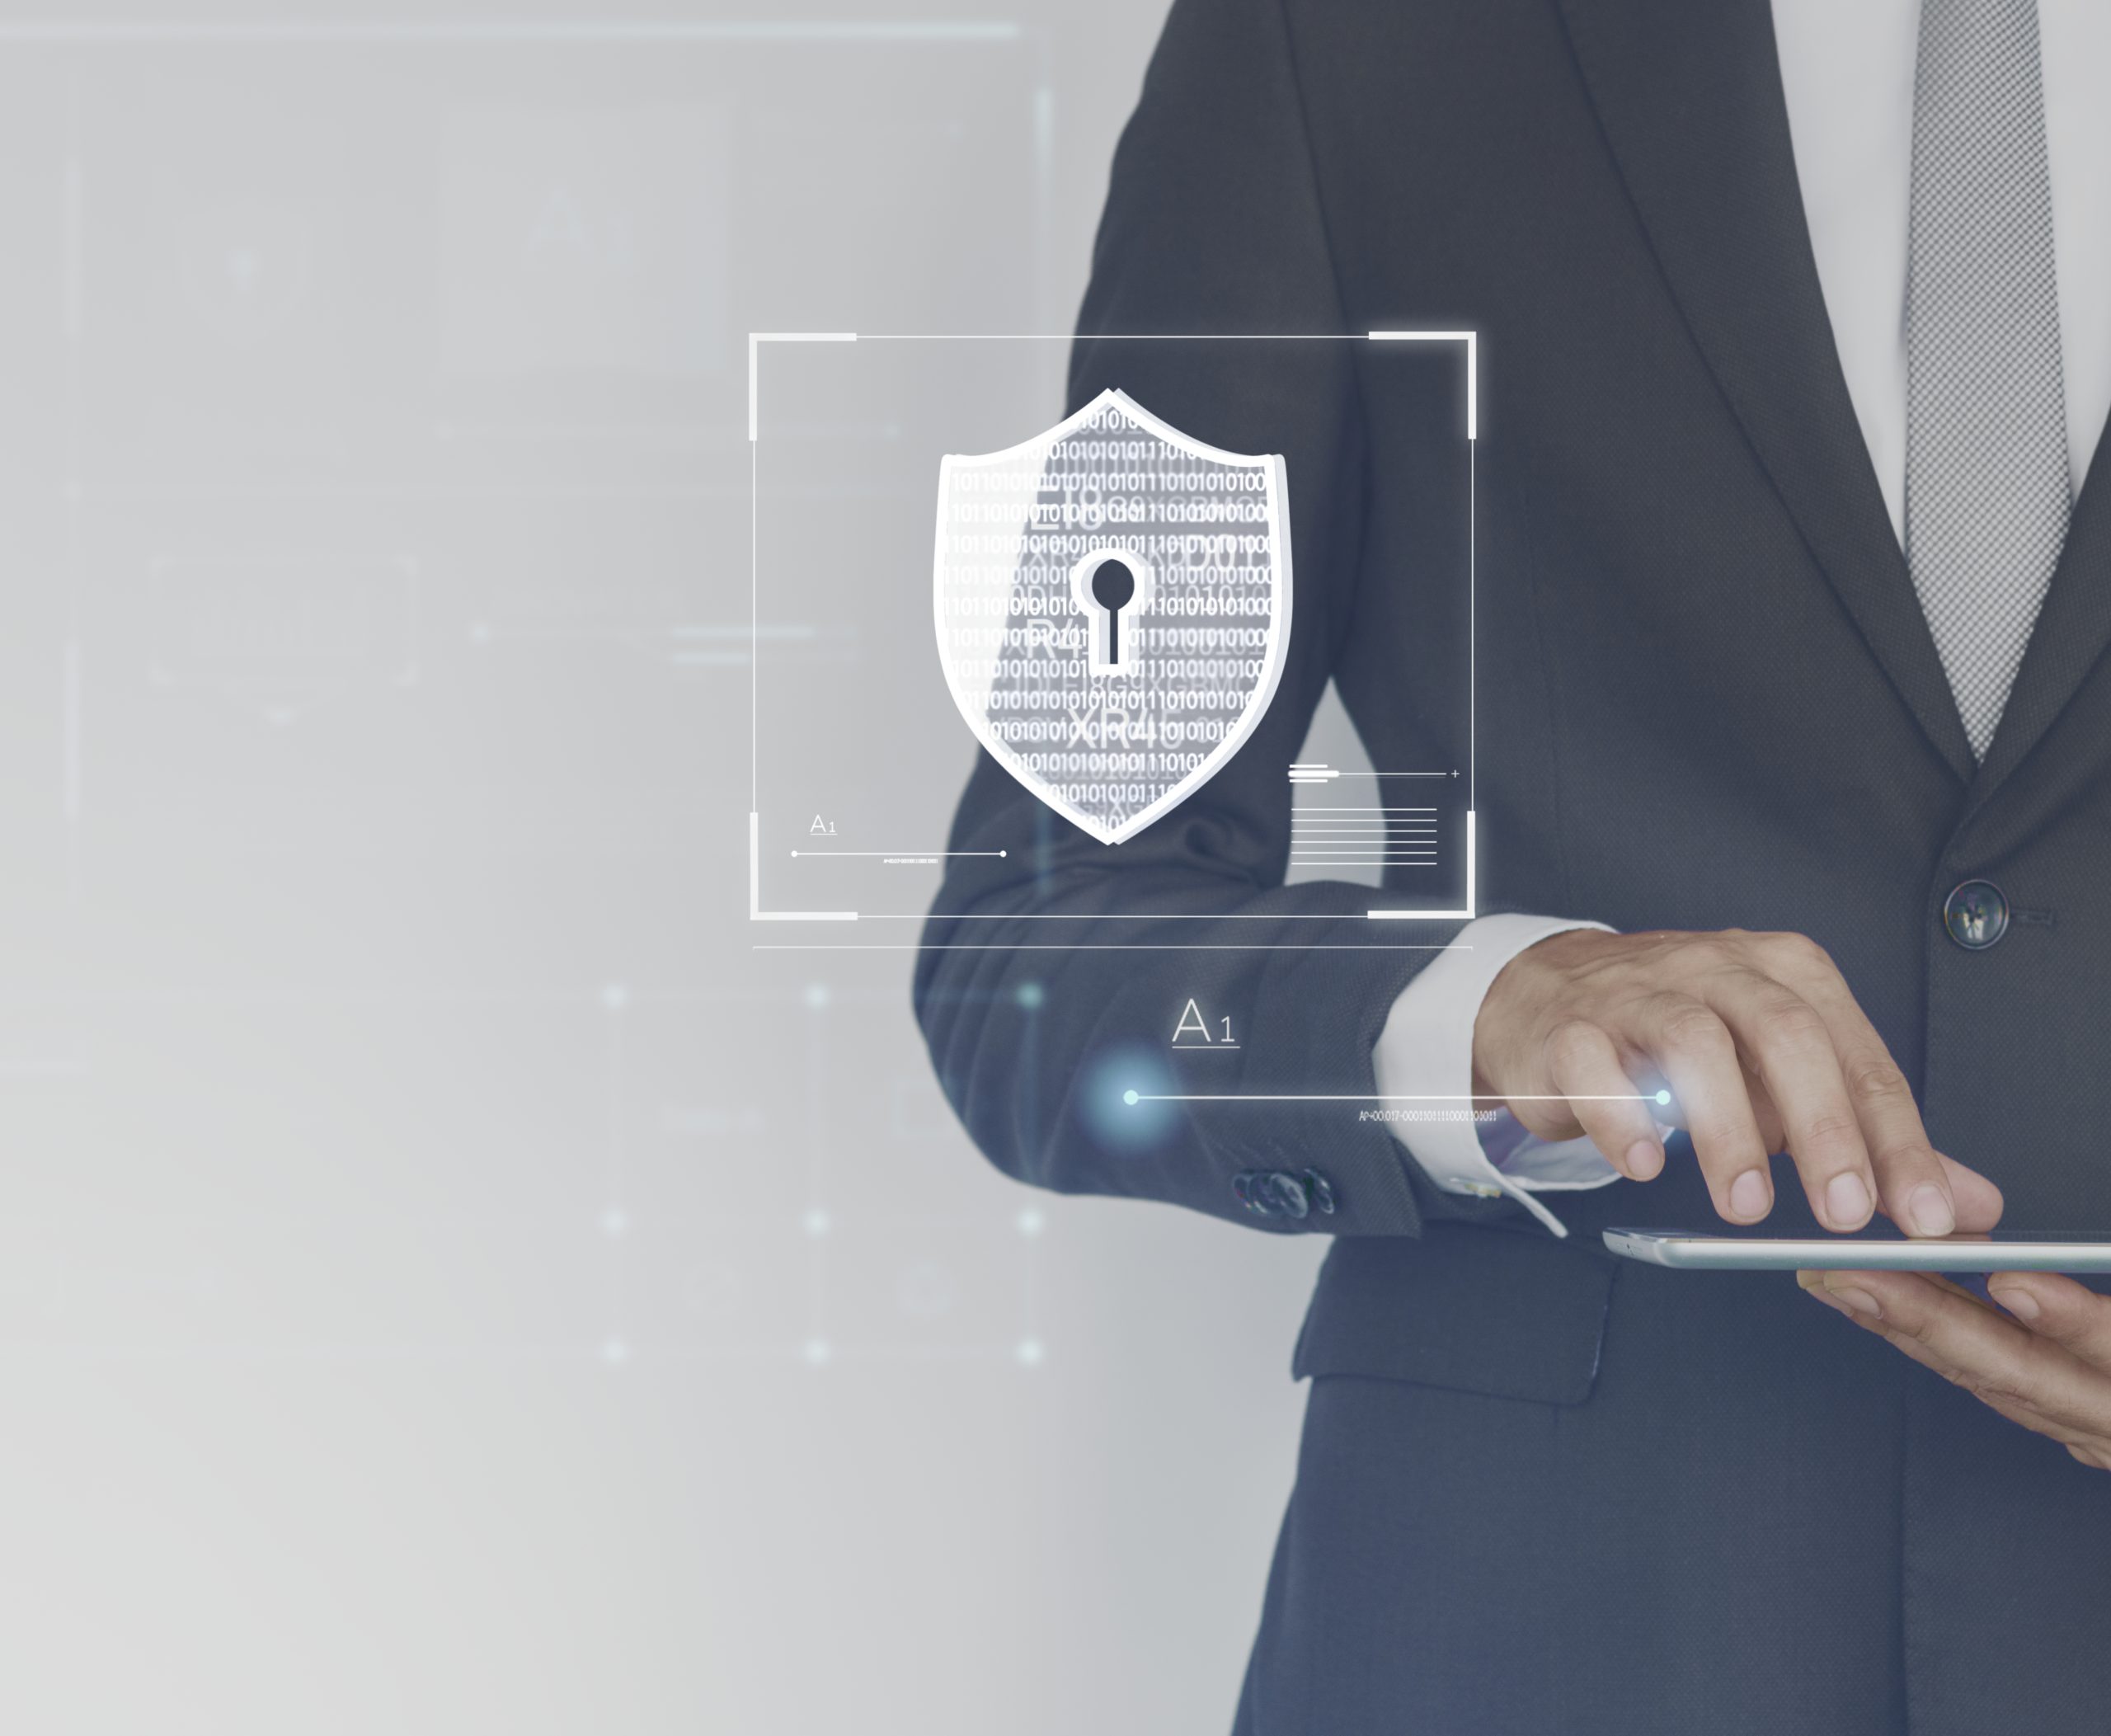 Confira com a EVAL oito tópicos importantes sobre Segurança Cibernética e Proteção de Dados para manter suas informações protegidas.